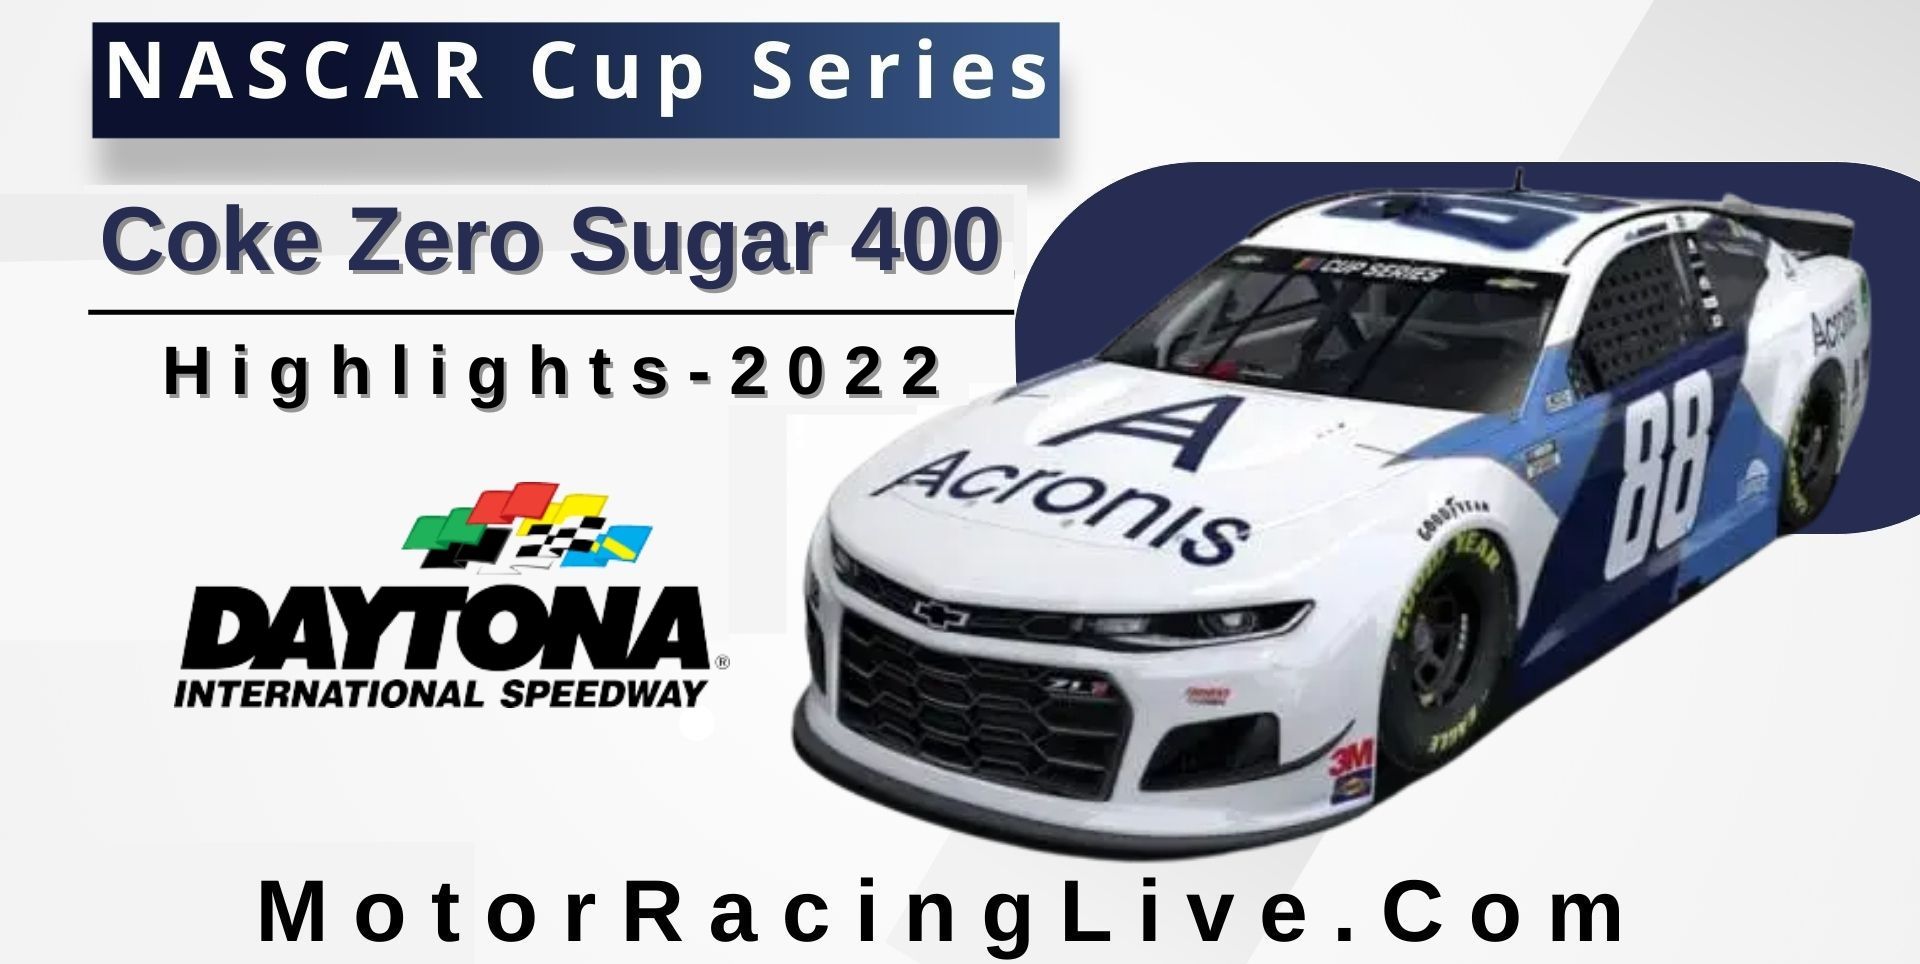 Coke Zero Sugar 400 Highlights 2022 NASCAR Cup